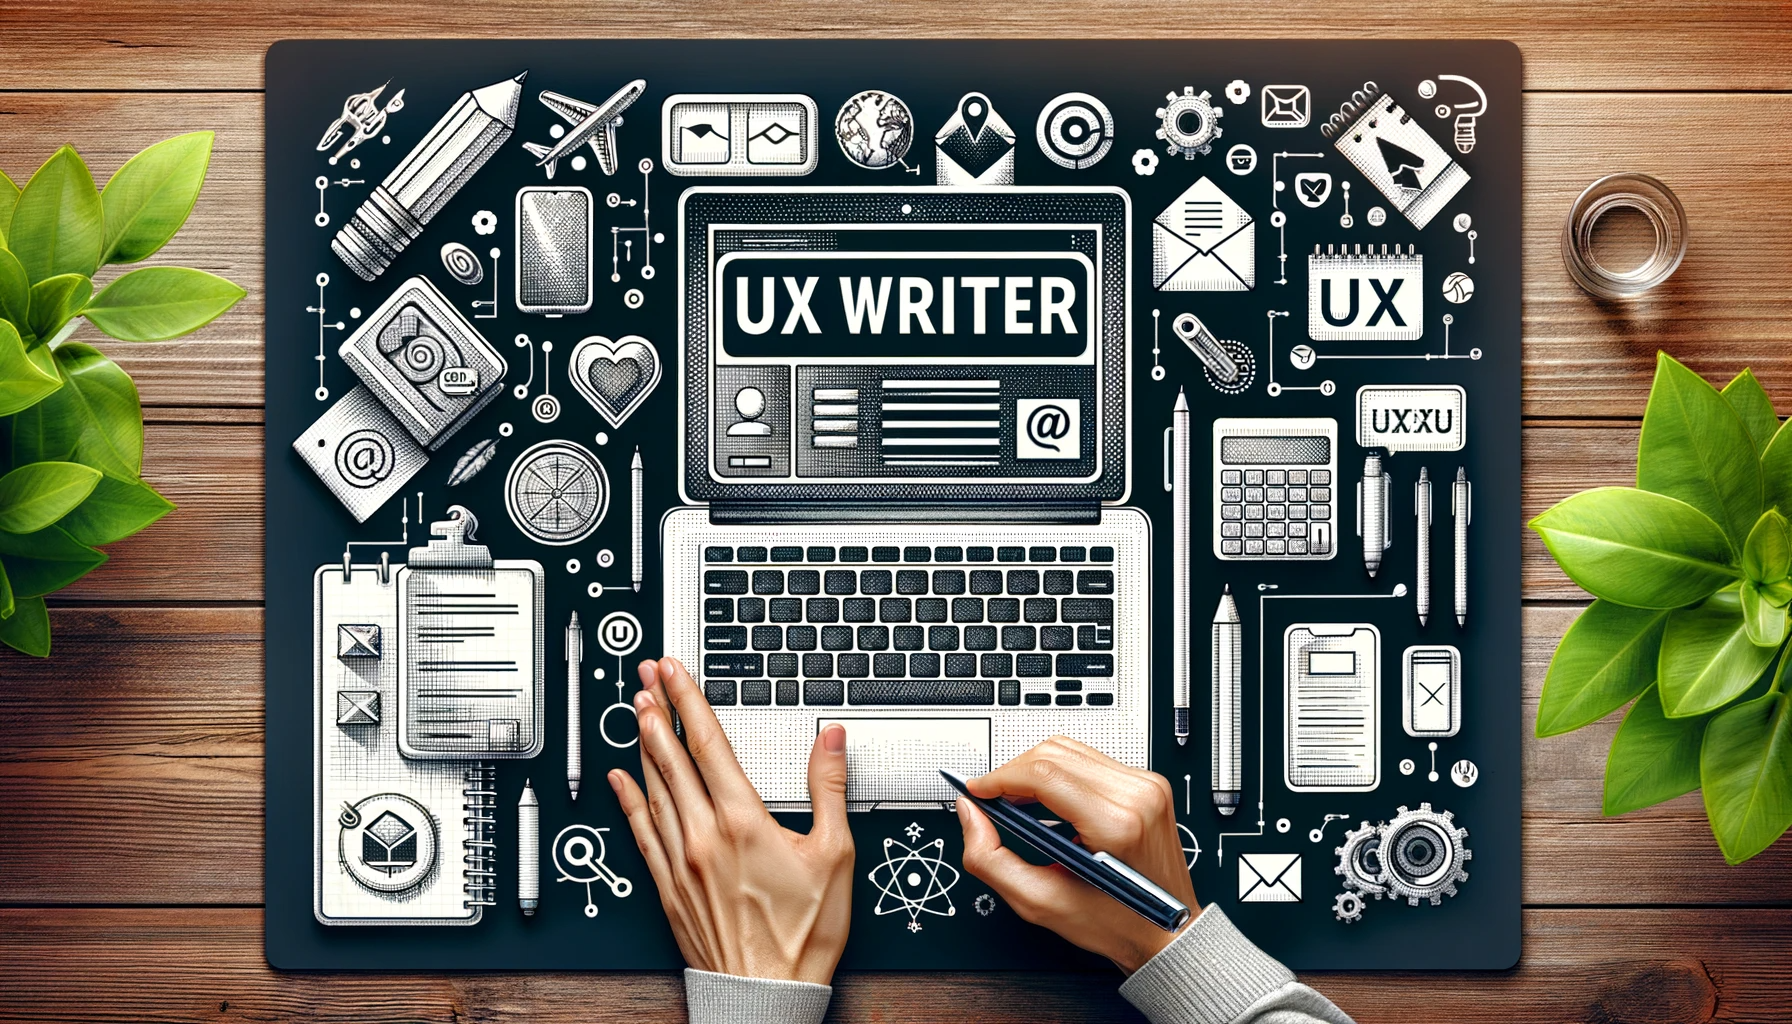 UX Writer